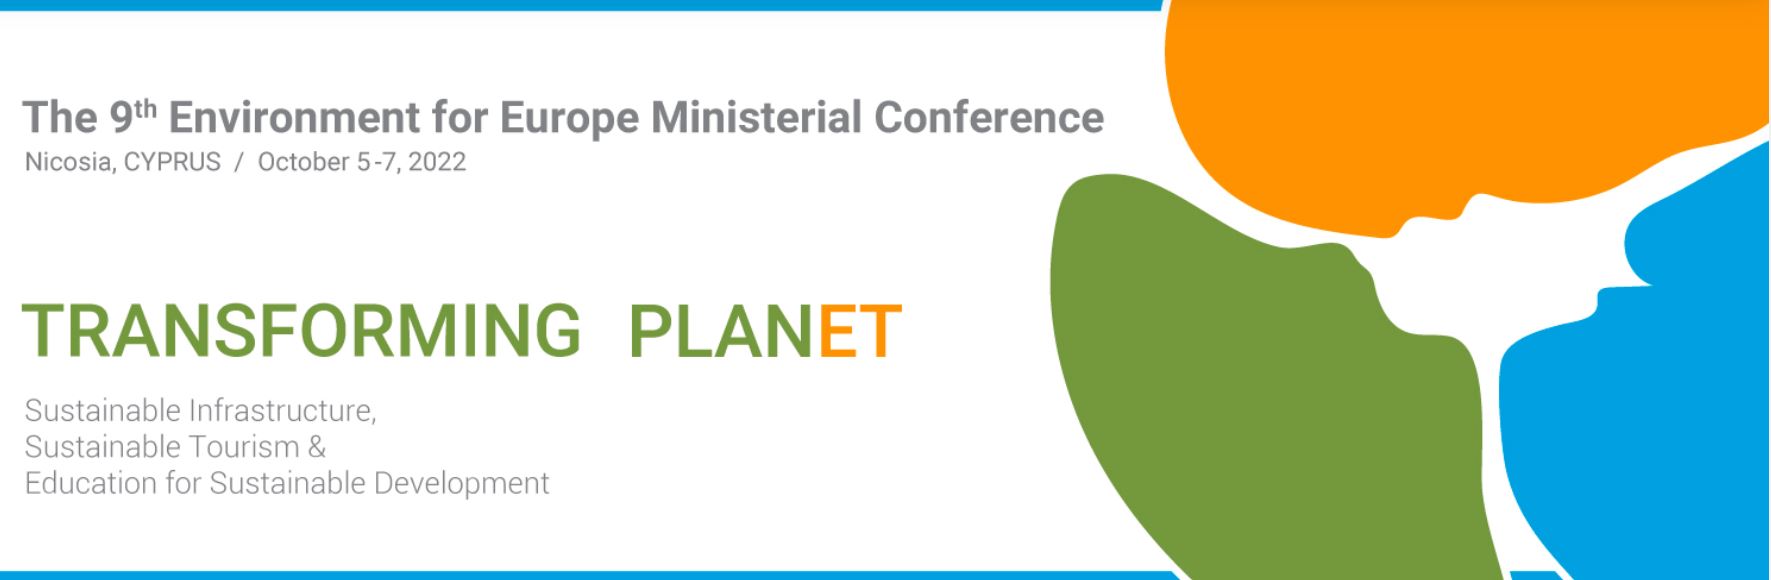 Девятая Конференция Министров «Окружающая среда для Европы» «ПРЕОБРАЗУЯ ПЛАНЕТУ»  